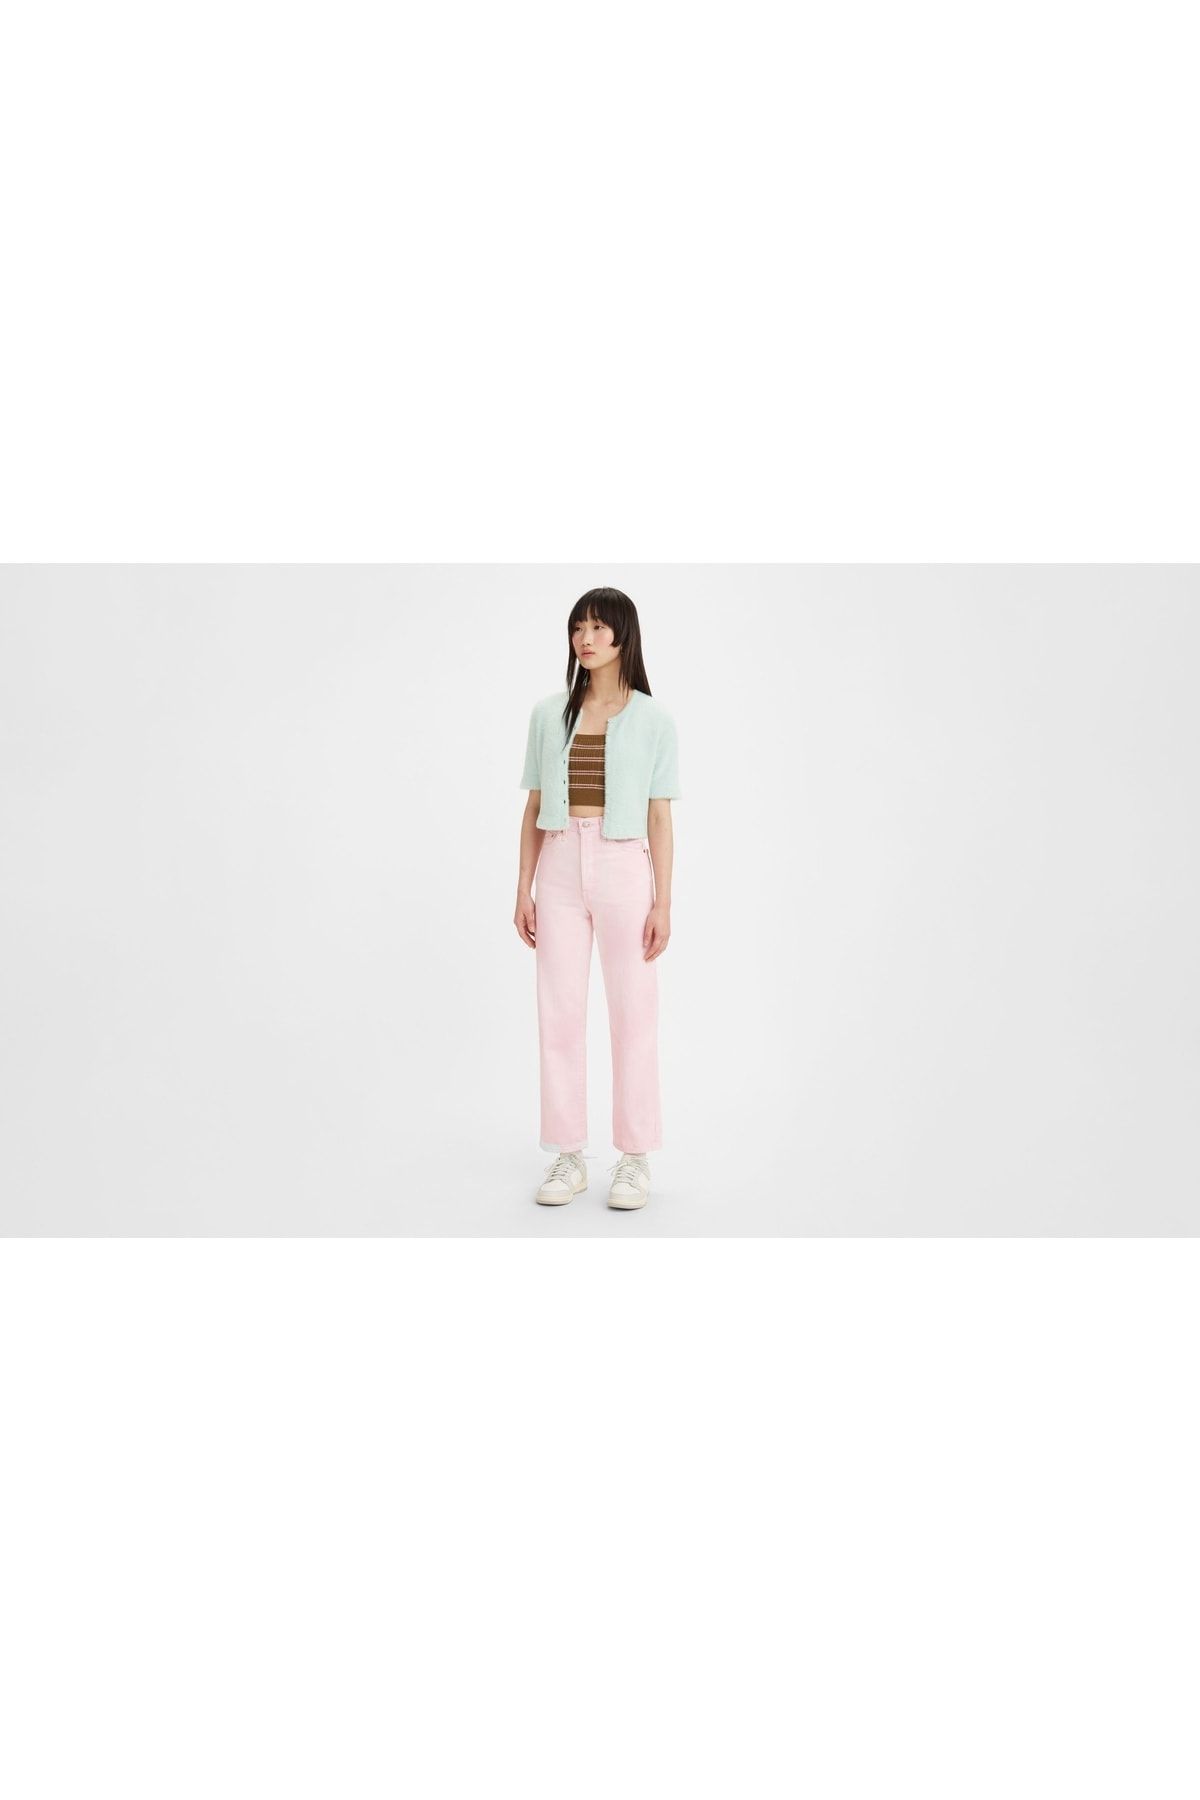 Levi's Ribcage Straight Ankle Kadın Jean Pantolon - Pink Garment Dye